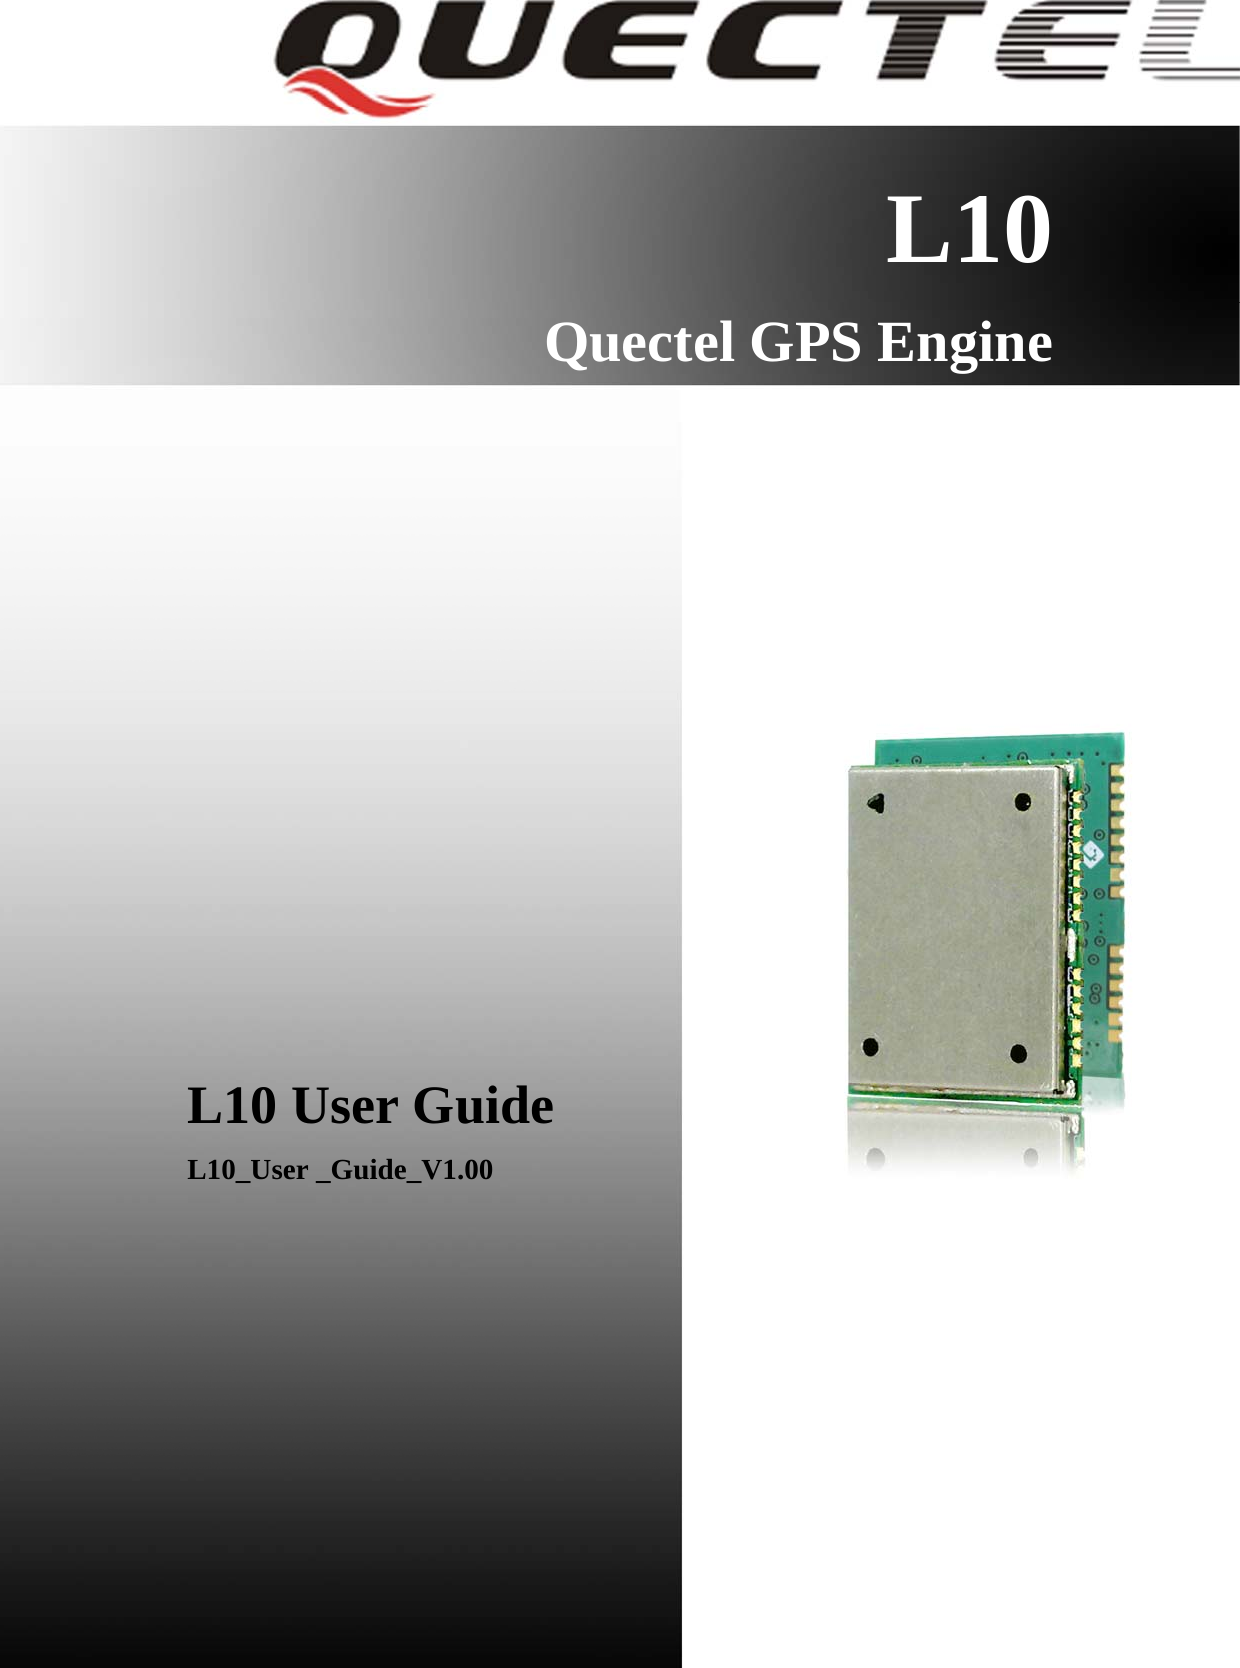    L10 Quectel GPS Engine                  L10 User Guide L10_User _Guide_V1.00         